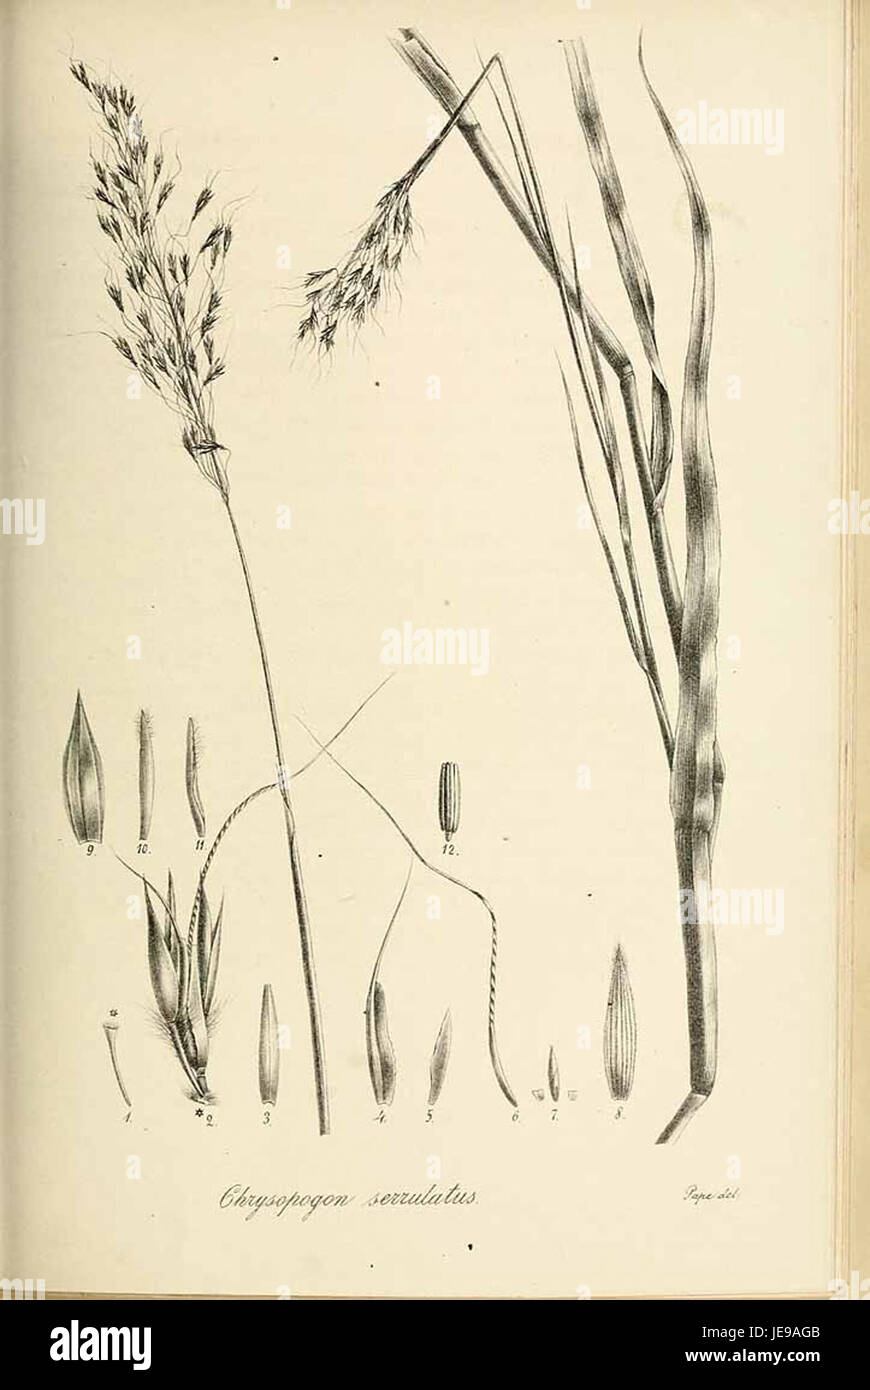 Chrysopogon serrulatus - Species graminum - Volume 3 Stock Photo